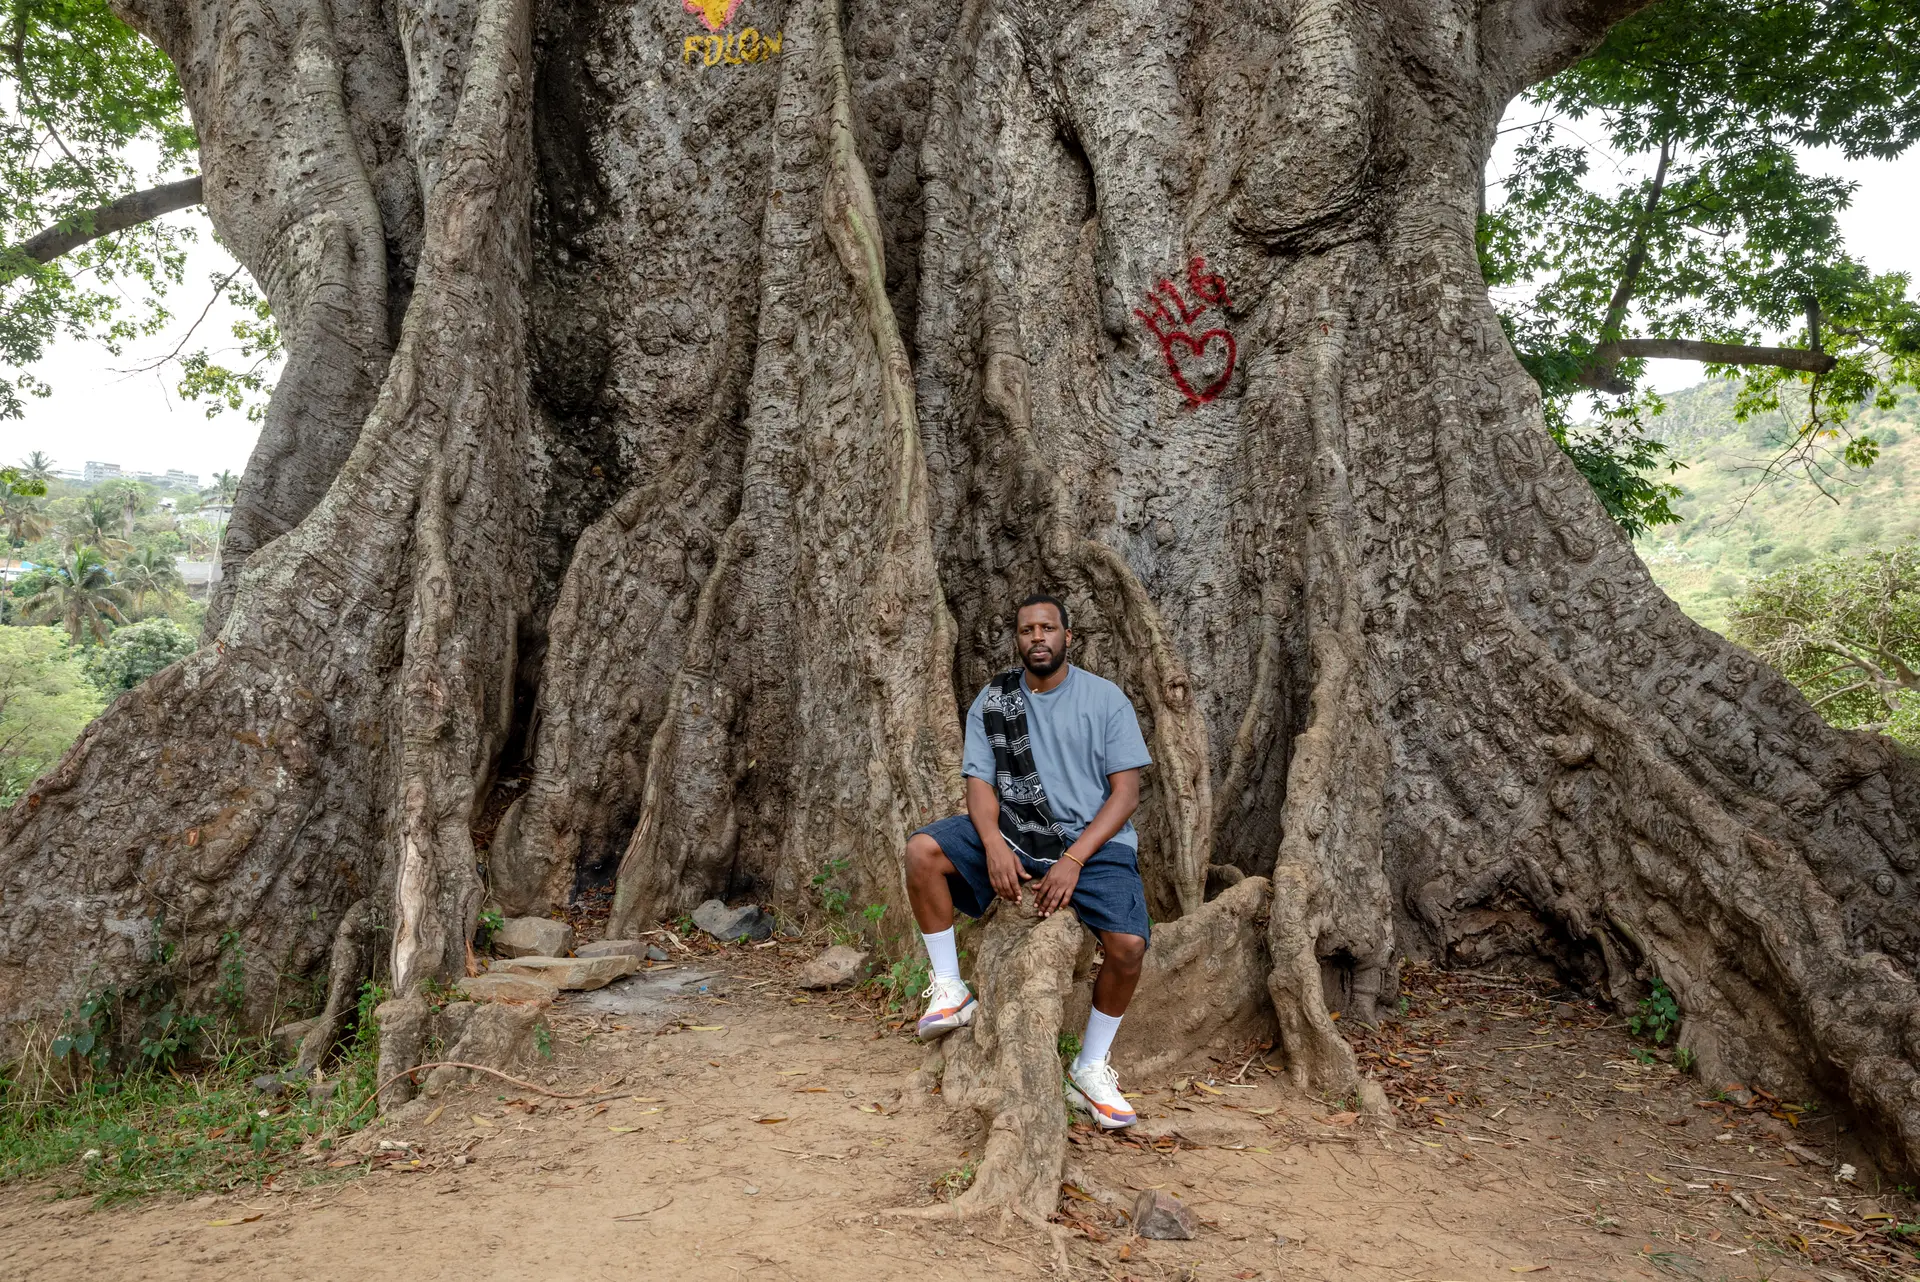 Dino posa junto do Poilão de Boentrada, árvore centenária que se julga ser a mais antiga de Cabo Verde.